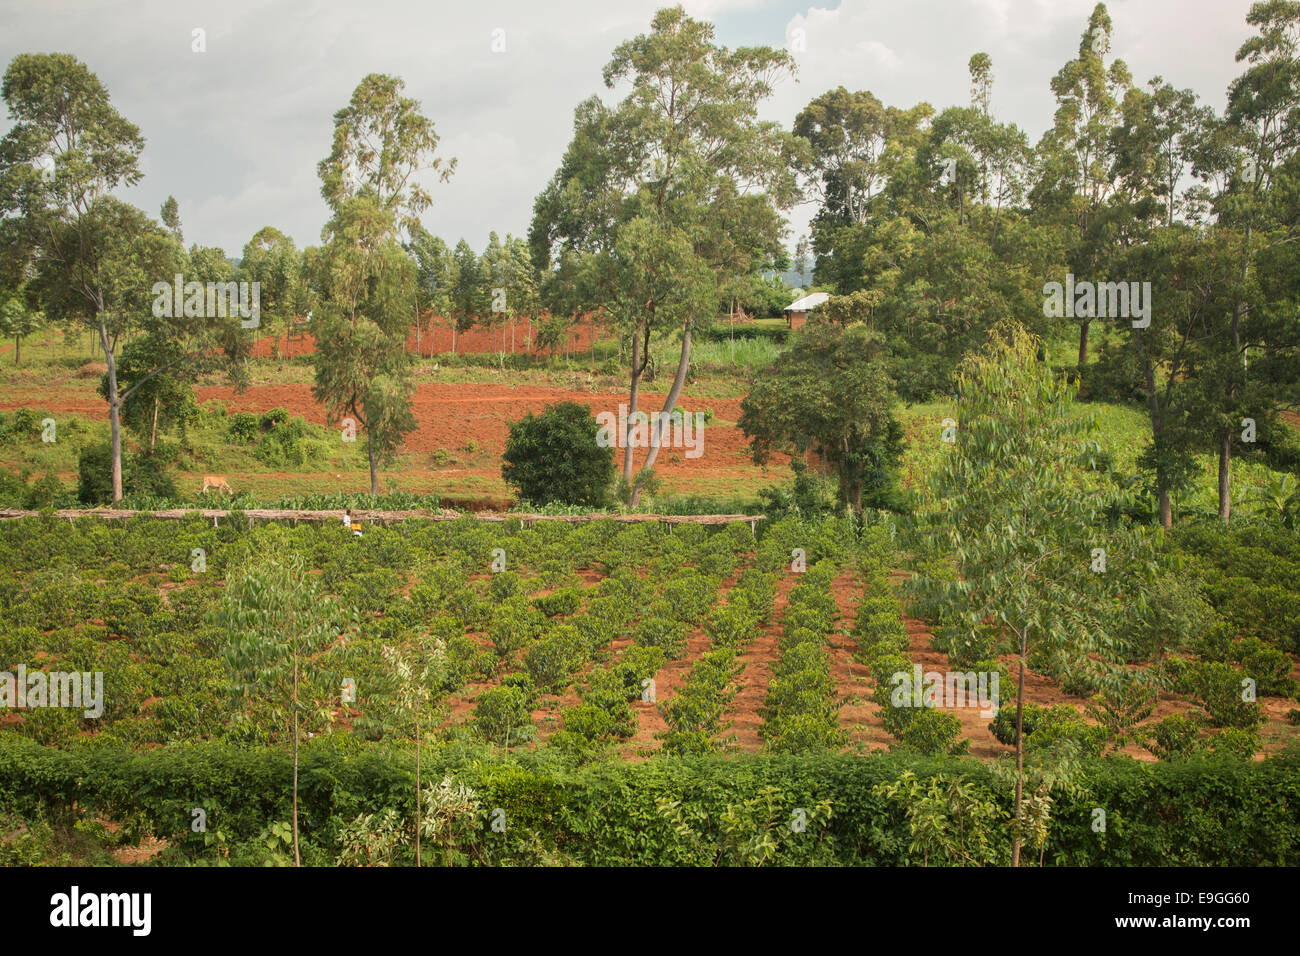 Coffee farm at Kabondo Farmers' Cooperative Society, Rachuonyo South, Kenya. Stock Photo